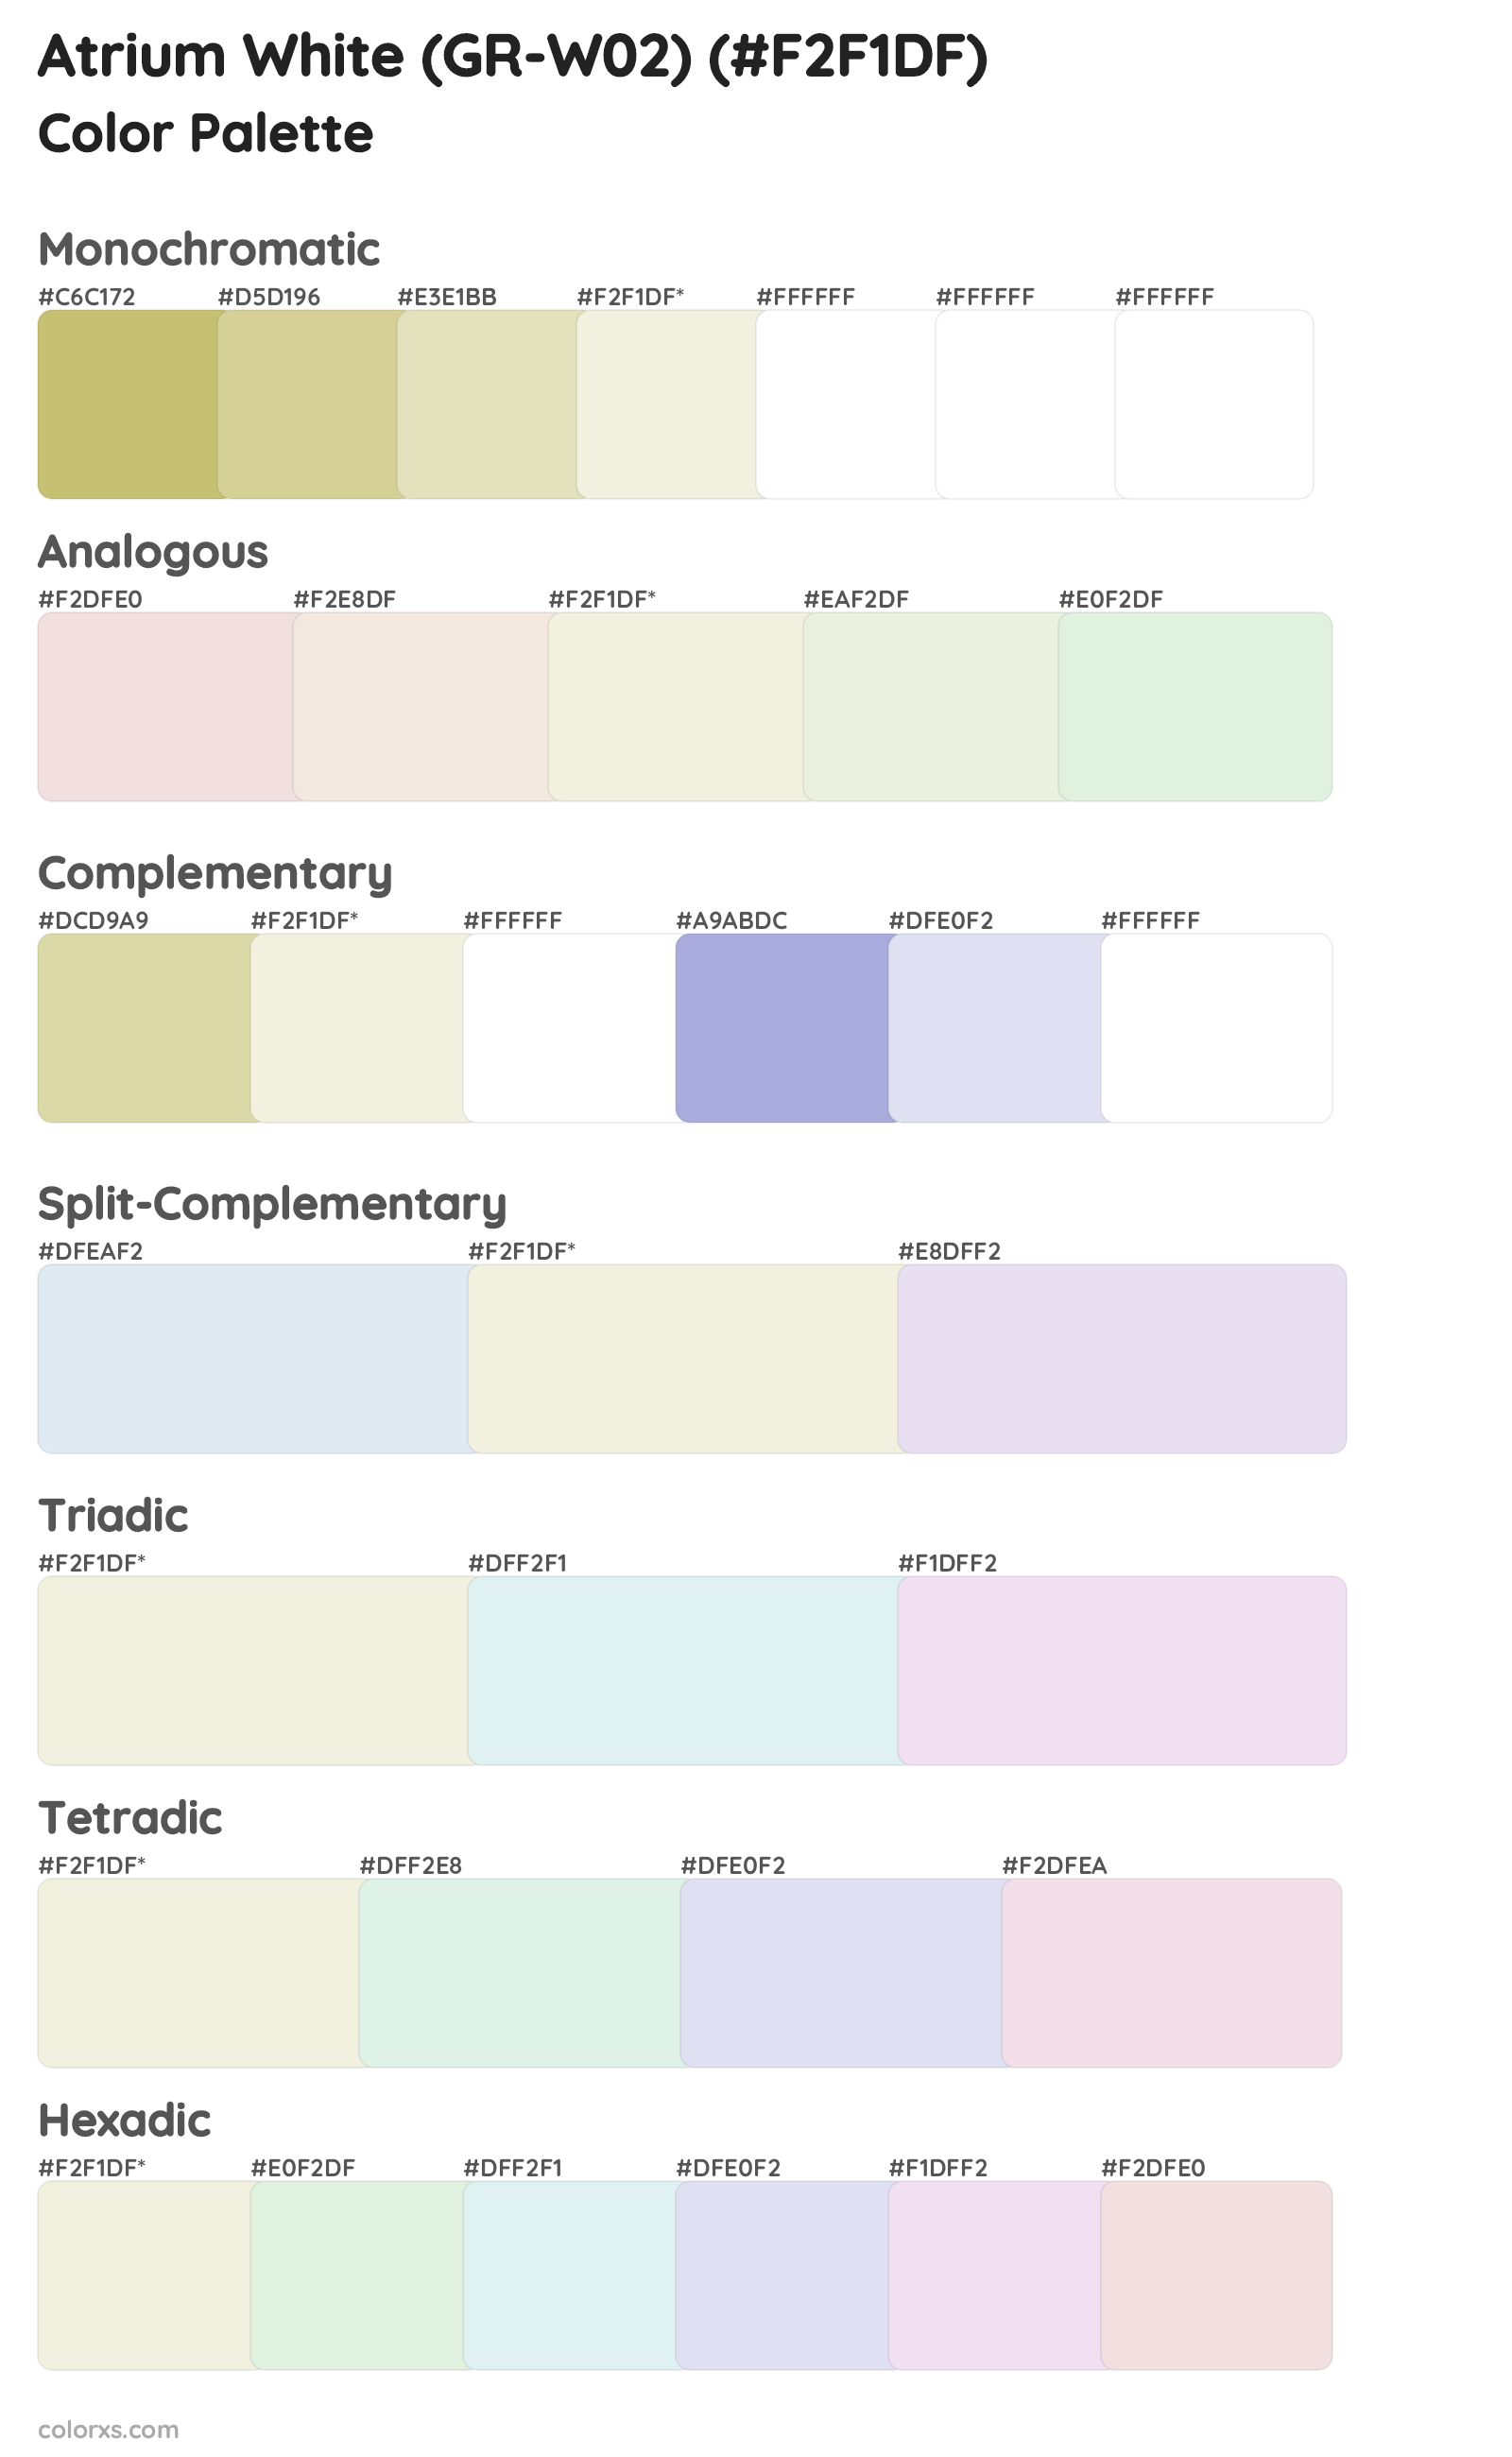 Atrium White (GR-W02) Color Scheme Palettes